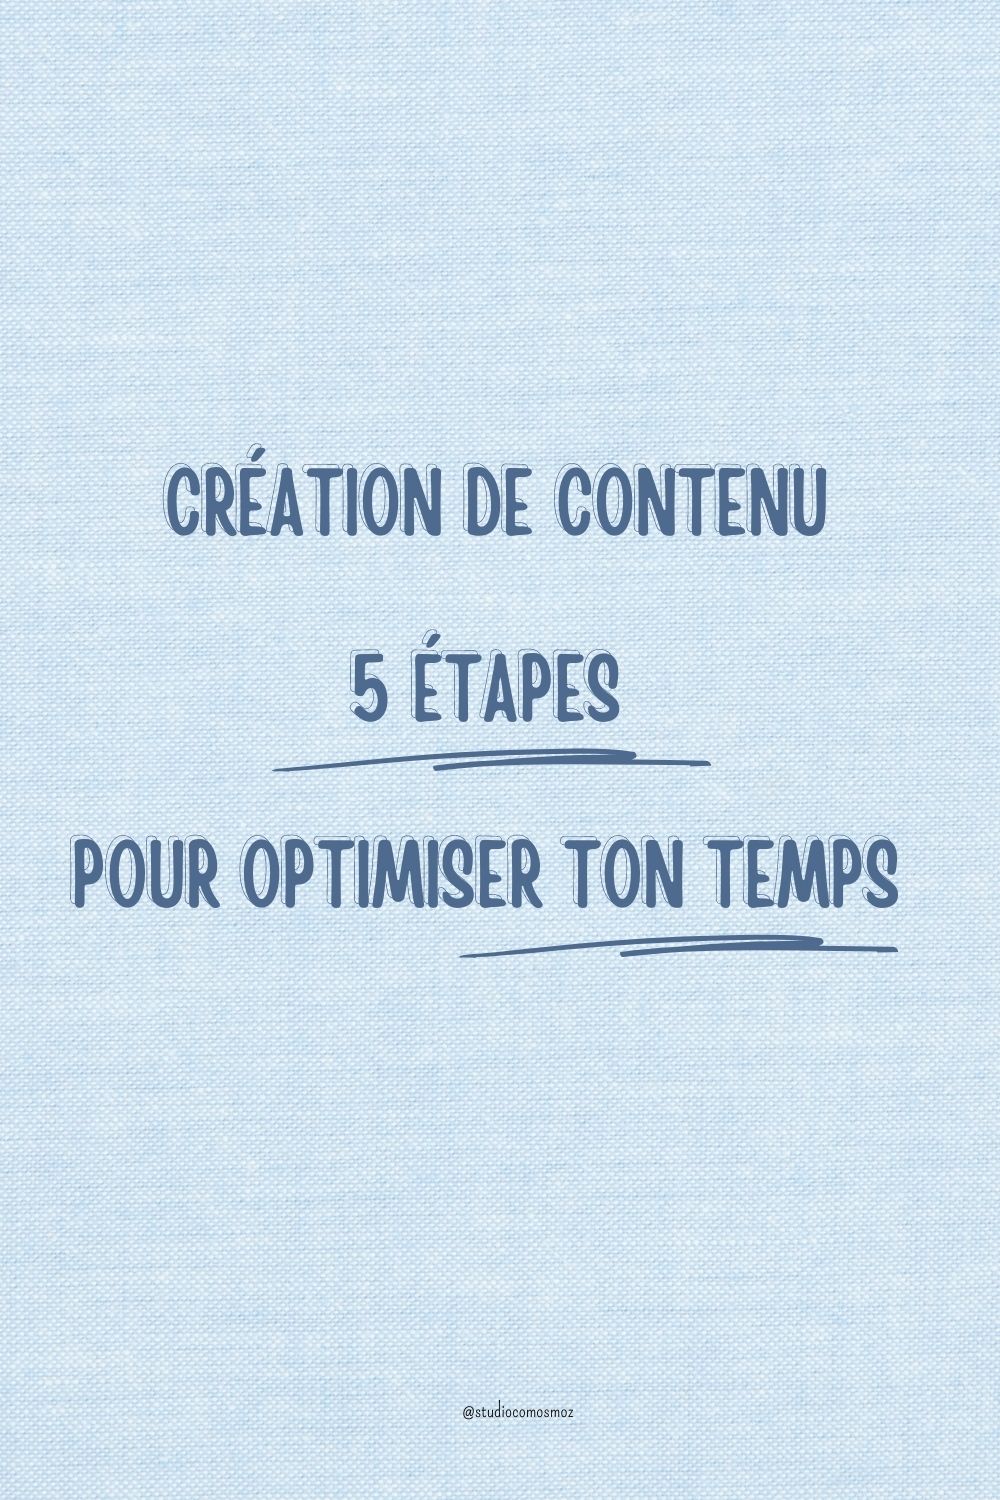 5 étapes pour optimiser ta création de contenu